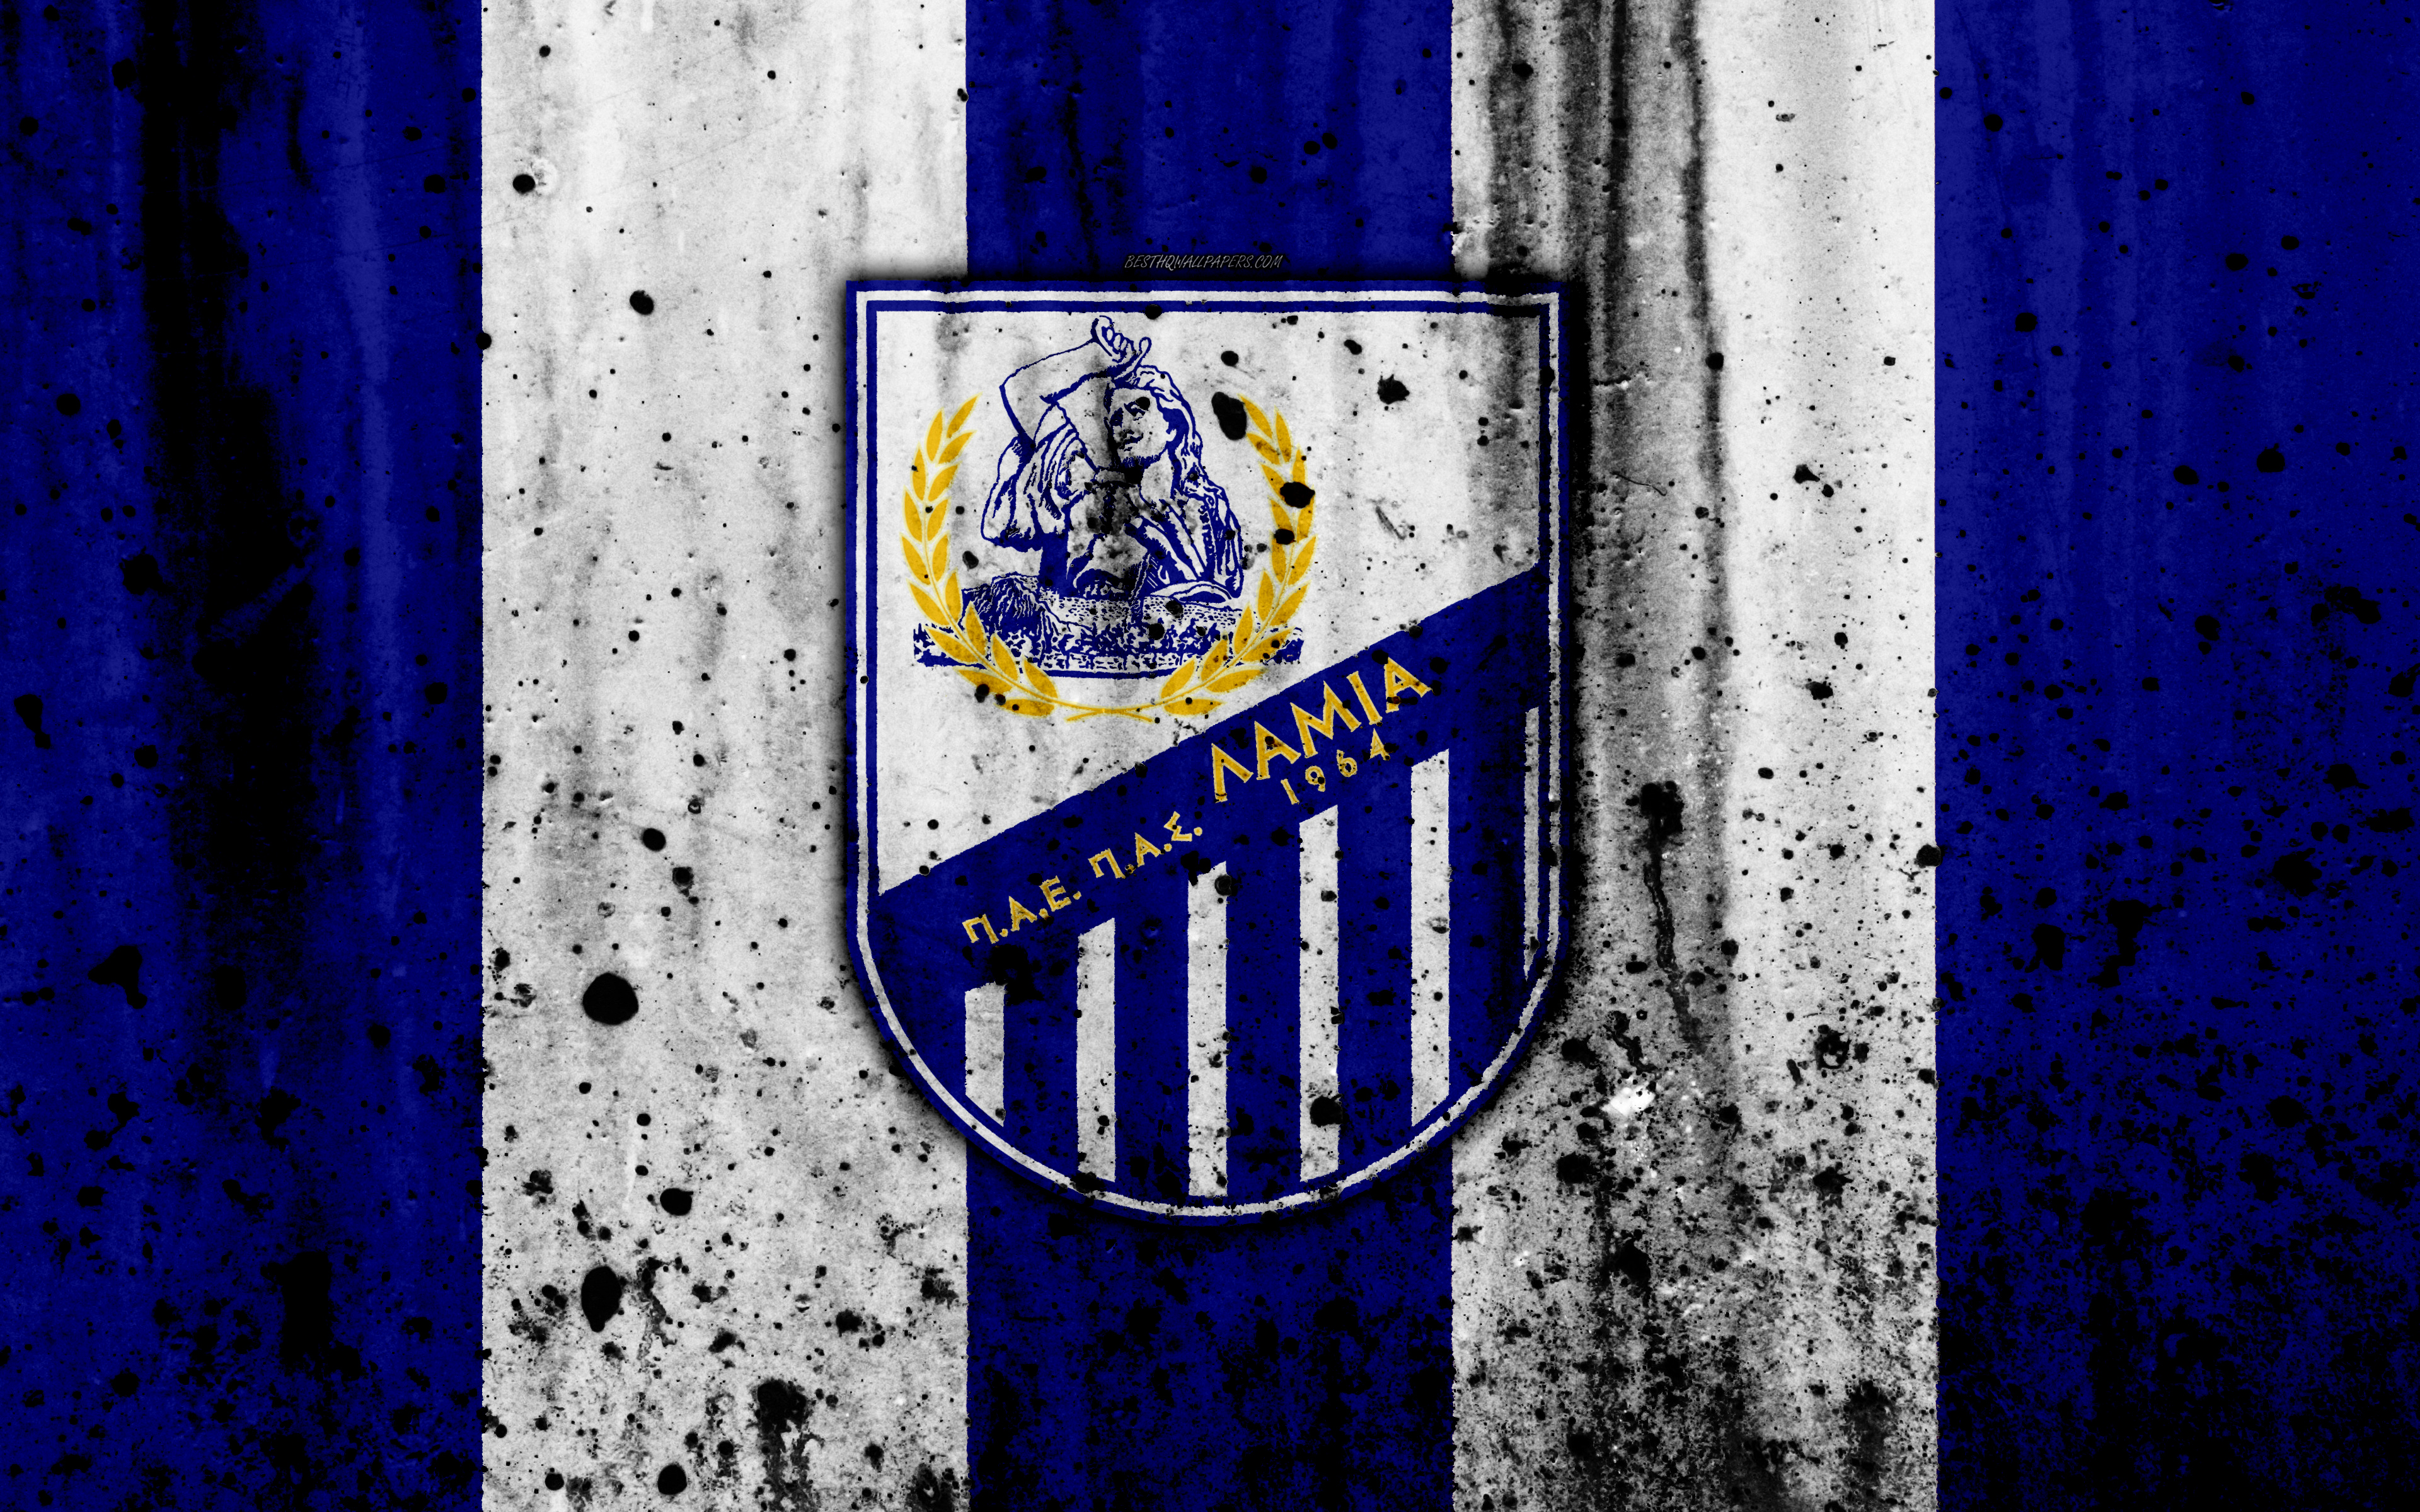 Descarga gratuita de fondo de pantalla para móvil de Fútbol, Logo, Emblema, Deporte, Pas Lamia 1964.